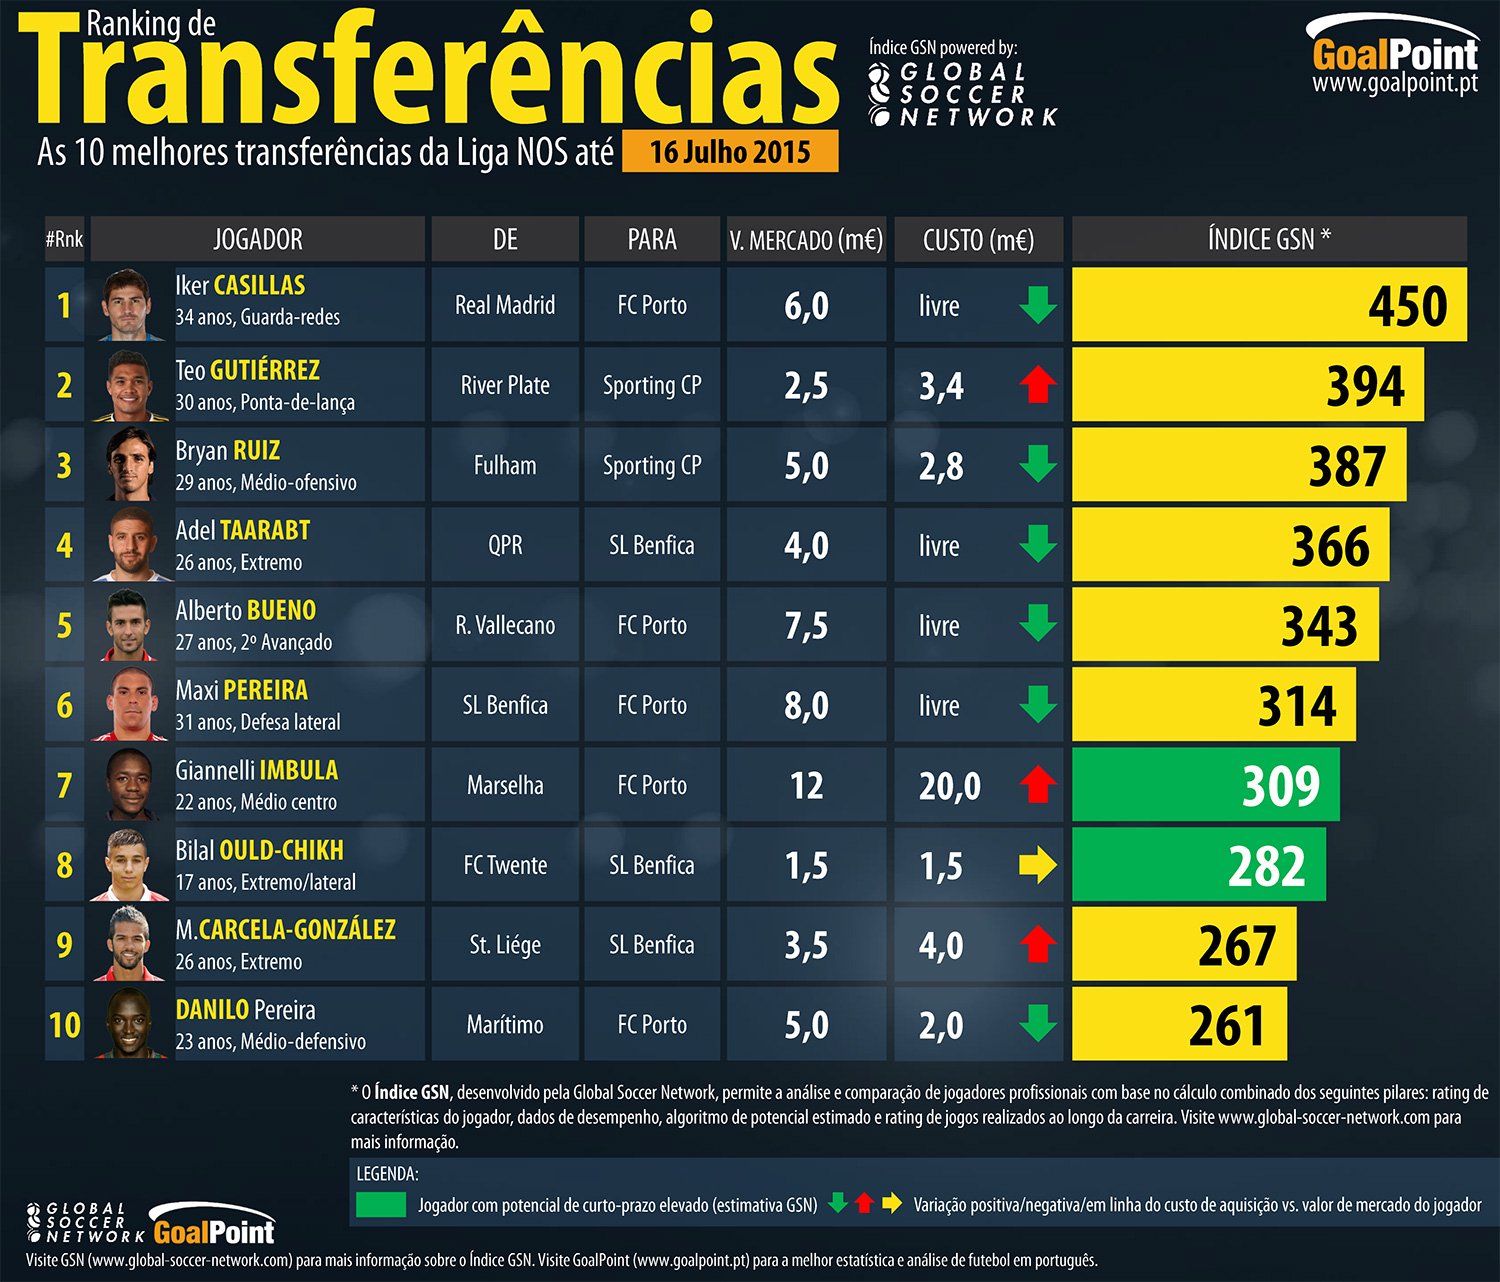 Ranking: as 10 melhores transferências do defeso 15/16 (16 de Julho 2015)